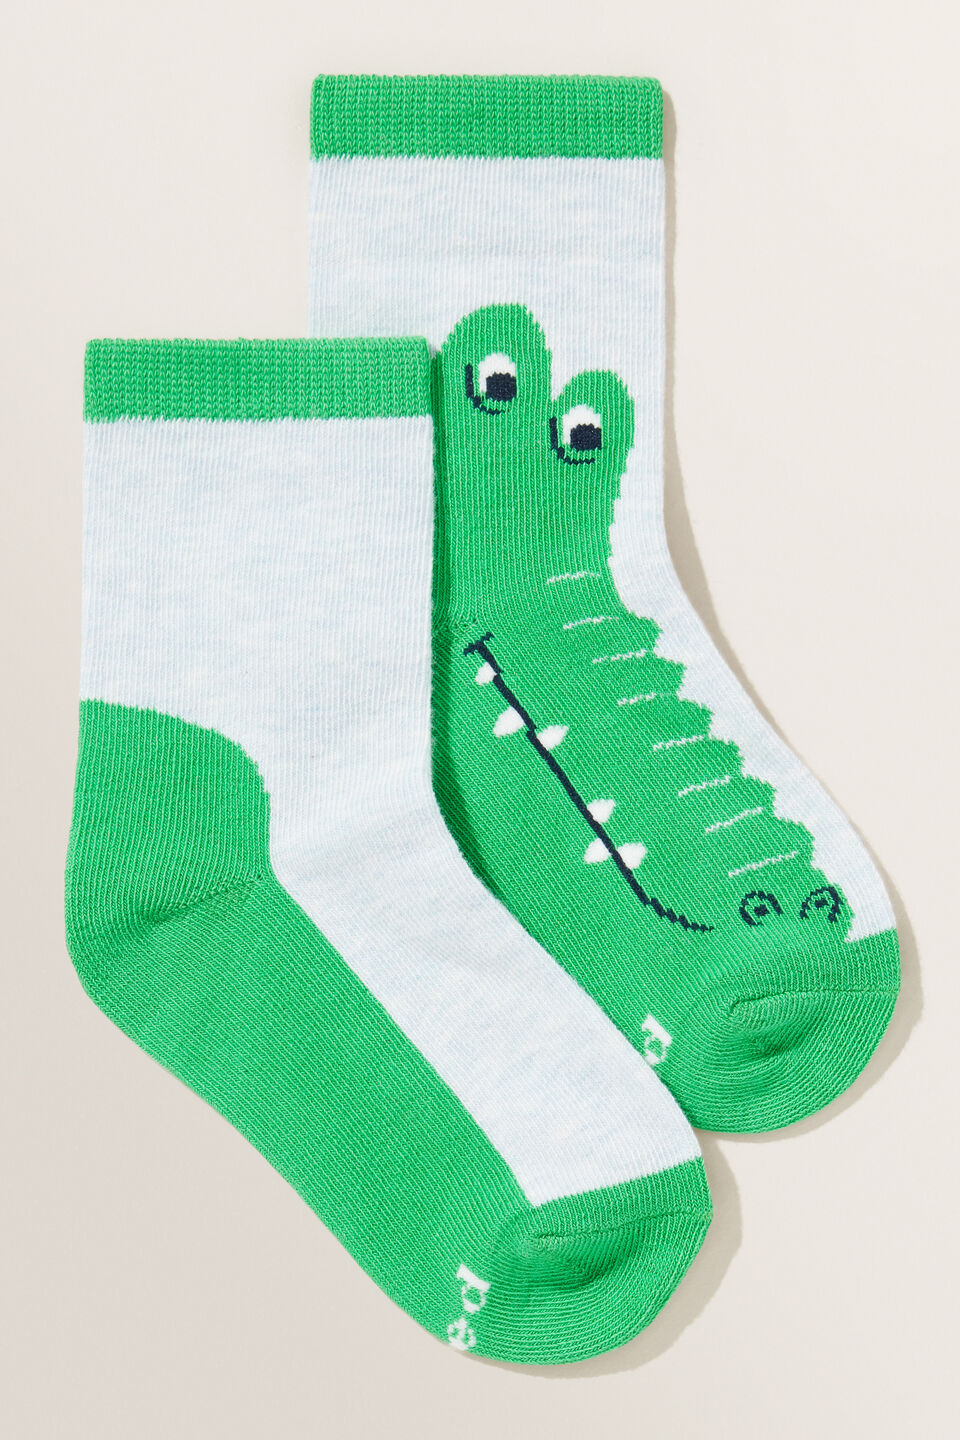 Crocodile Socks  Multi